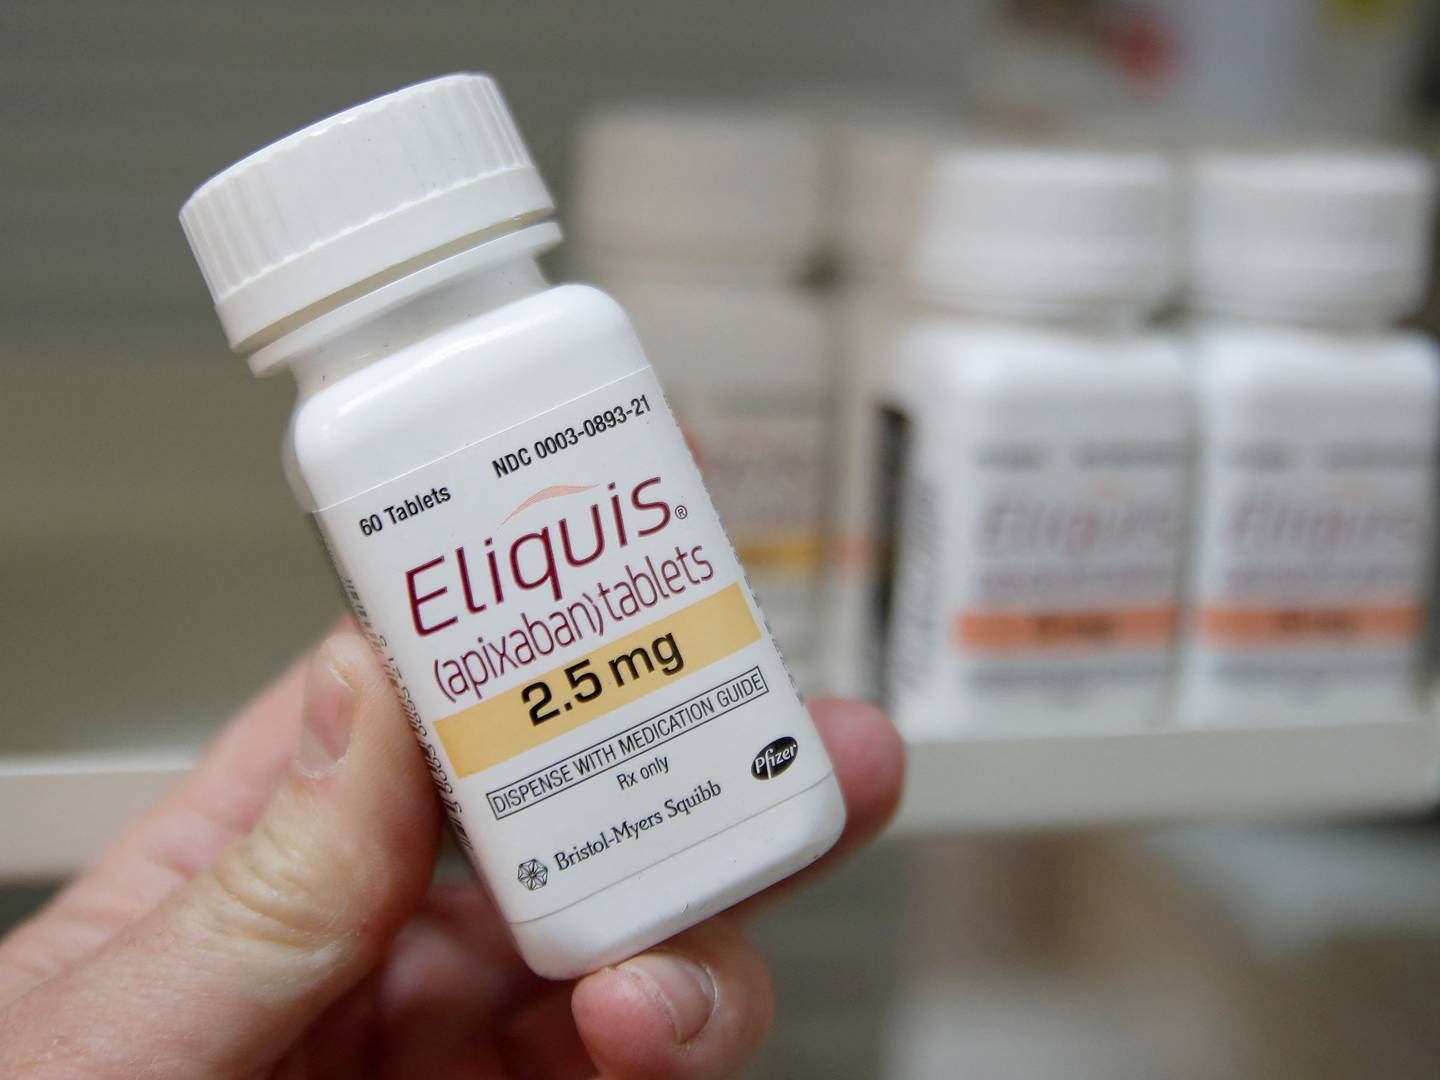 Bristol Myers Squibb deler med Pfizer det blodfortyndende medicinprodukt Eliquis, som af analytikere forventes at være blandt de 10 lægemidler, der oprindeligt blev udvalgt i september til at høre under prisforhandlinger i Medicare-programmet.